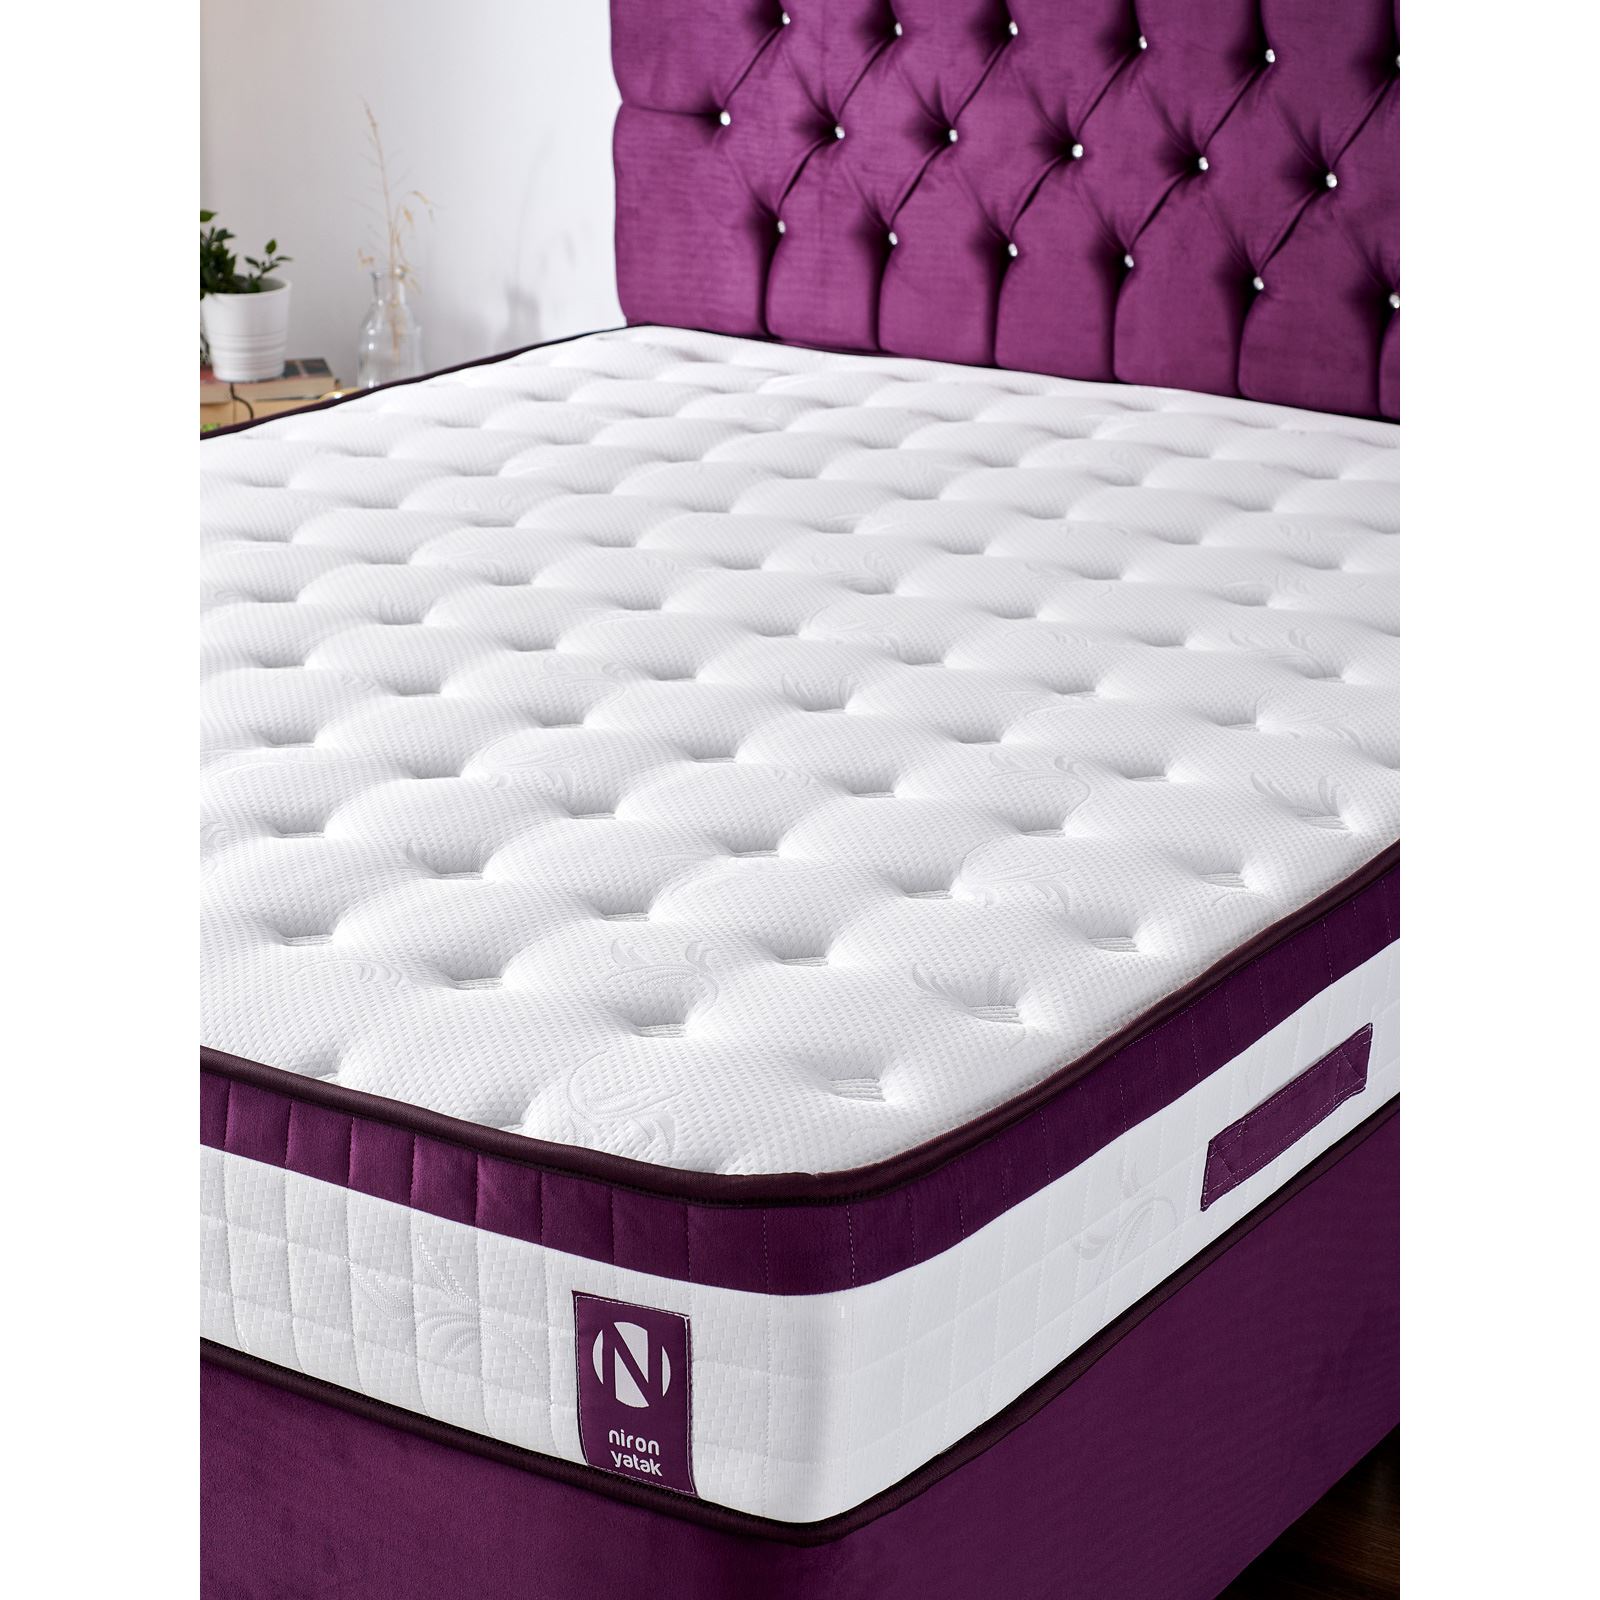 Niron Violet Yatak Seti 100x200 cm Tek Kişilik Yatak Baza Başlık Takımı Orta Sert Yatak Baza ve Başlığı Mor